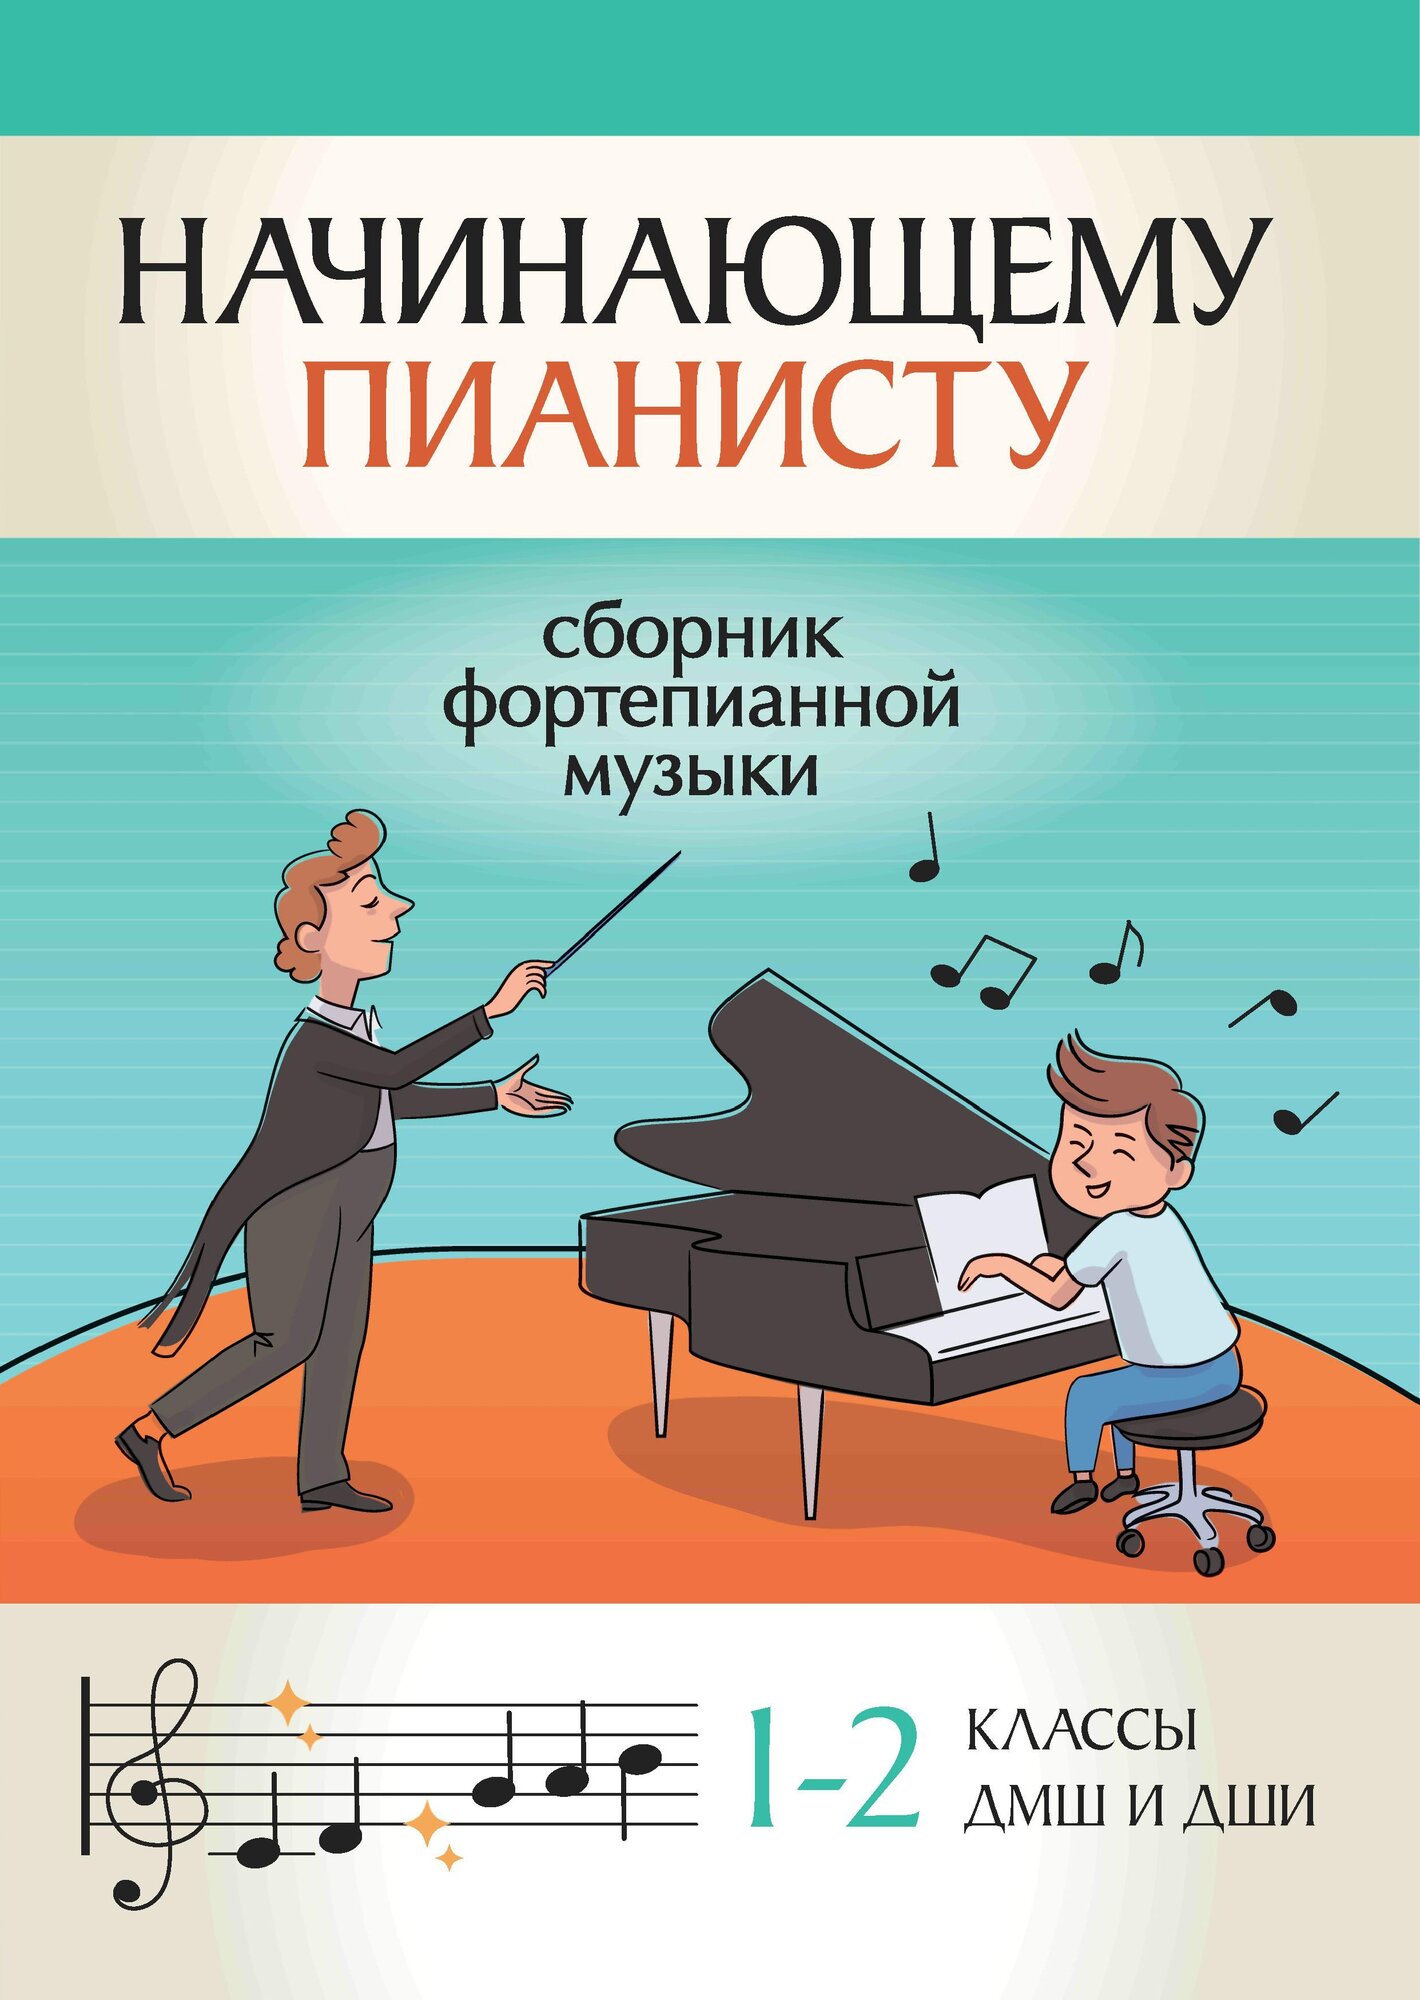 Начинающему пианисту: сборник фортепианной музыки: 1-2 классы ДМШ и ДШИ